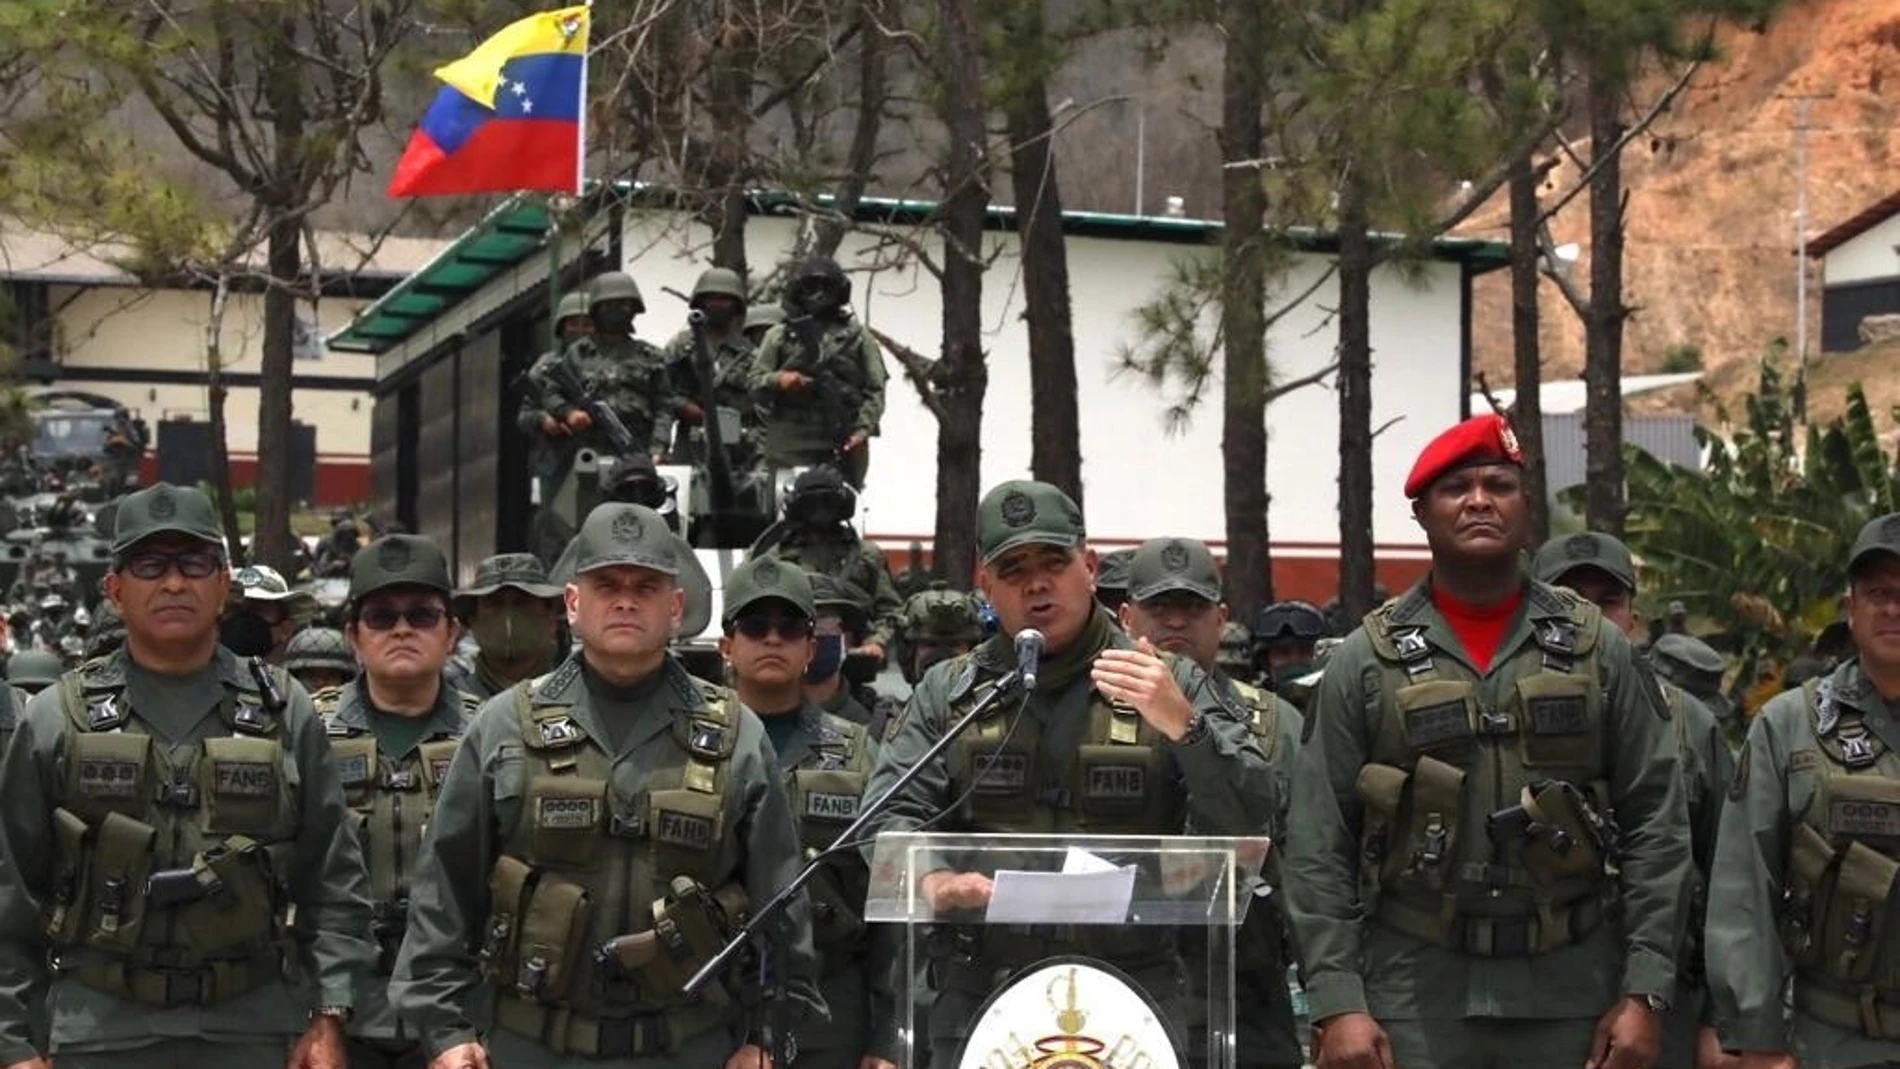 La cúpula militar expresa "absoluta lealtad" a Maduro tras ataque frustrado